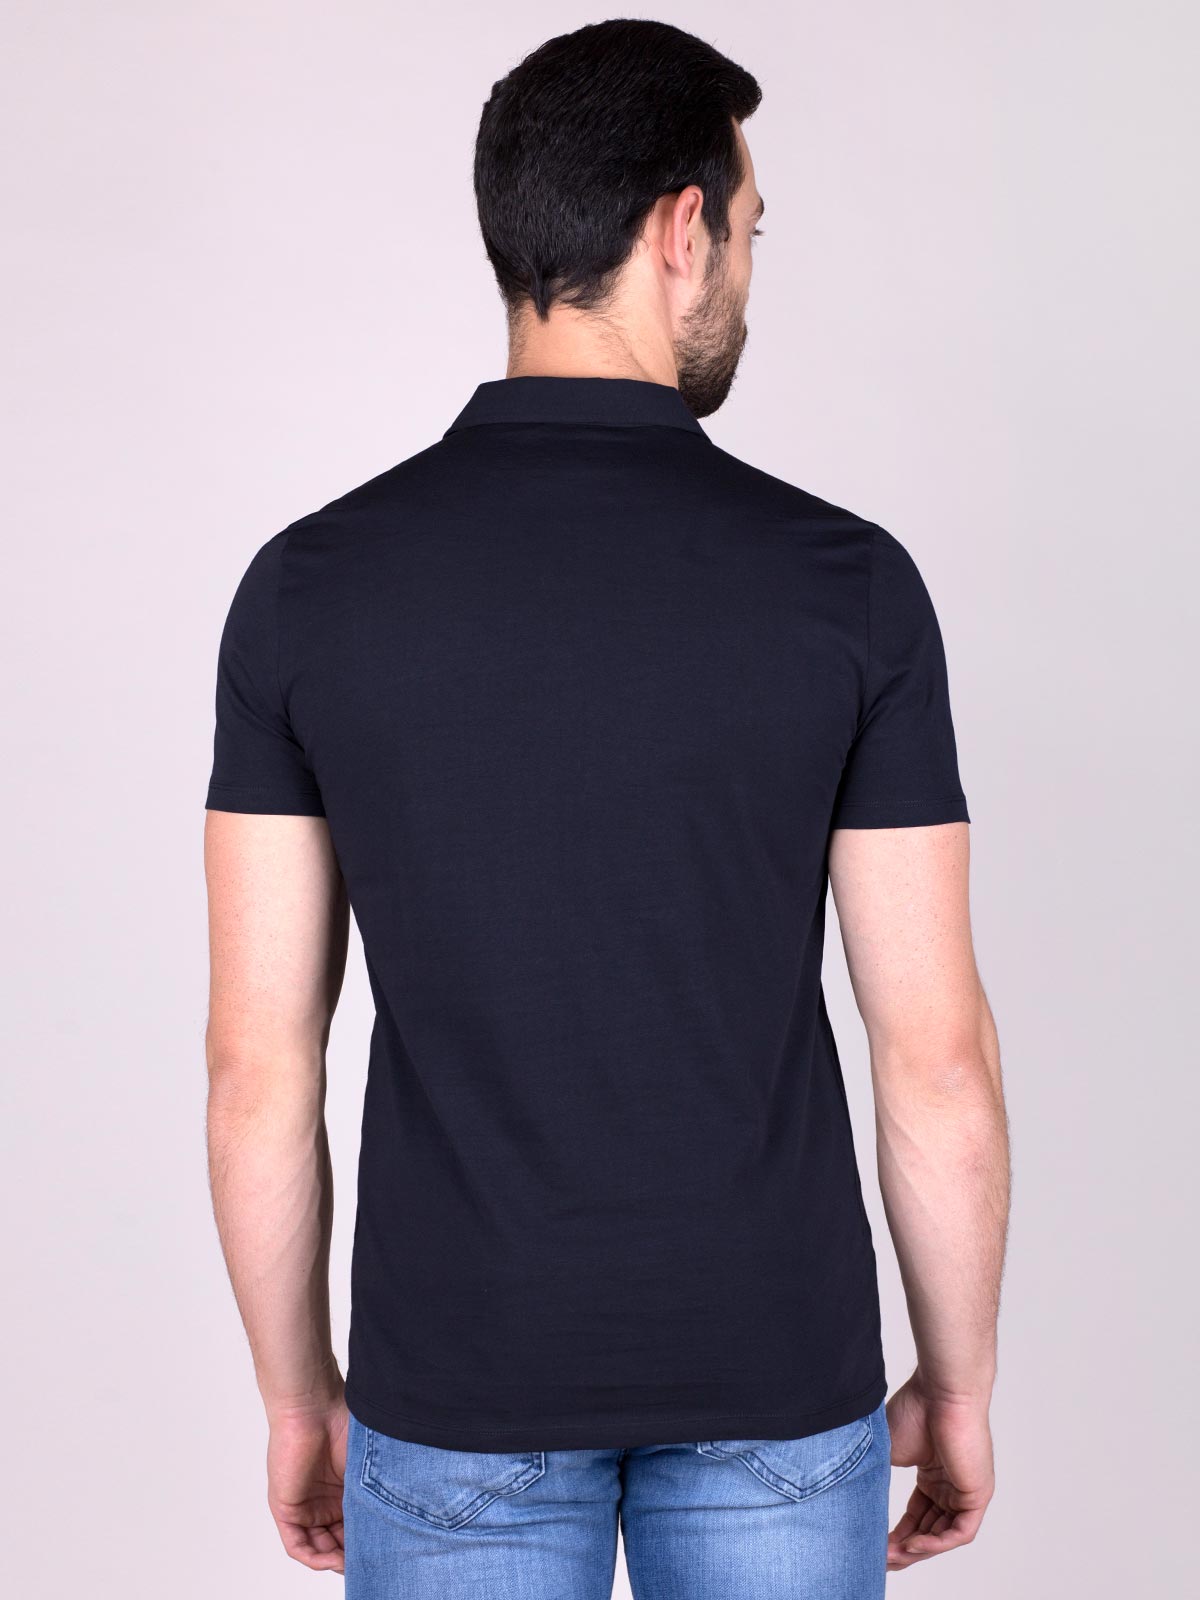 Μπλούζα σε μαύρο χρώμα με λογότυπο στο - 94379 € 12.37 img3